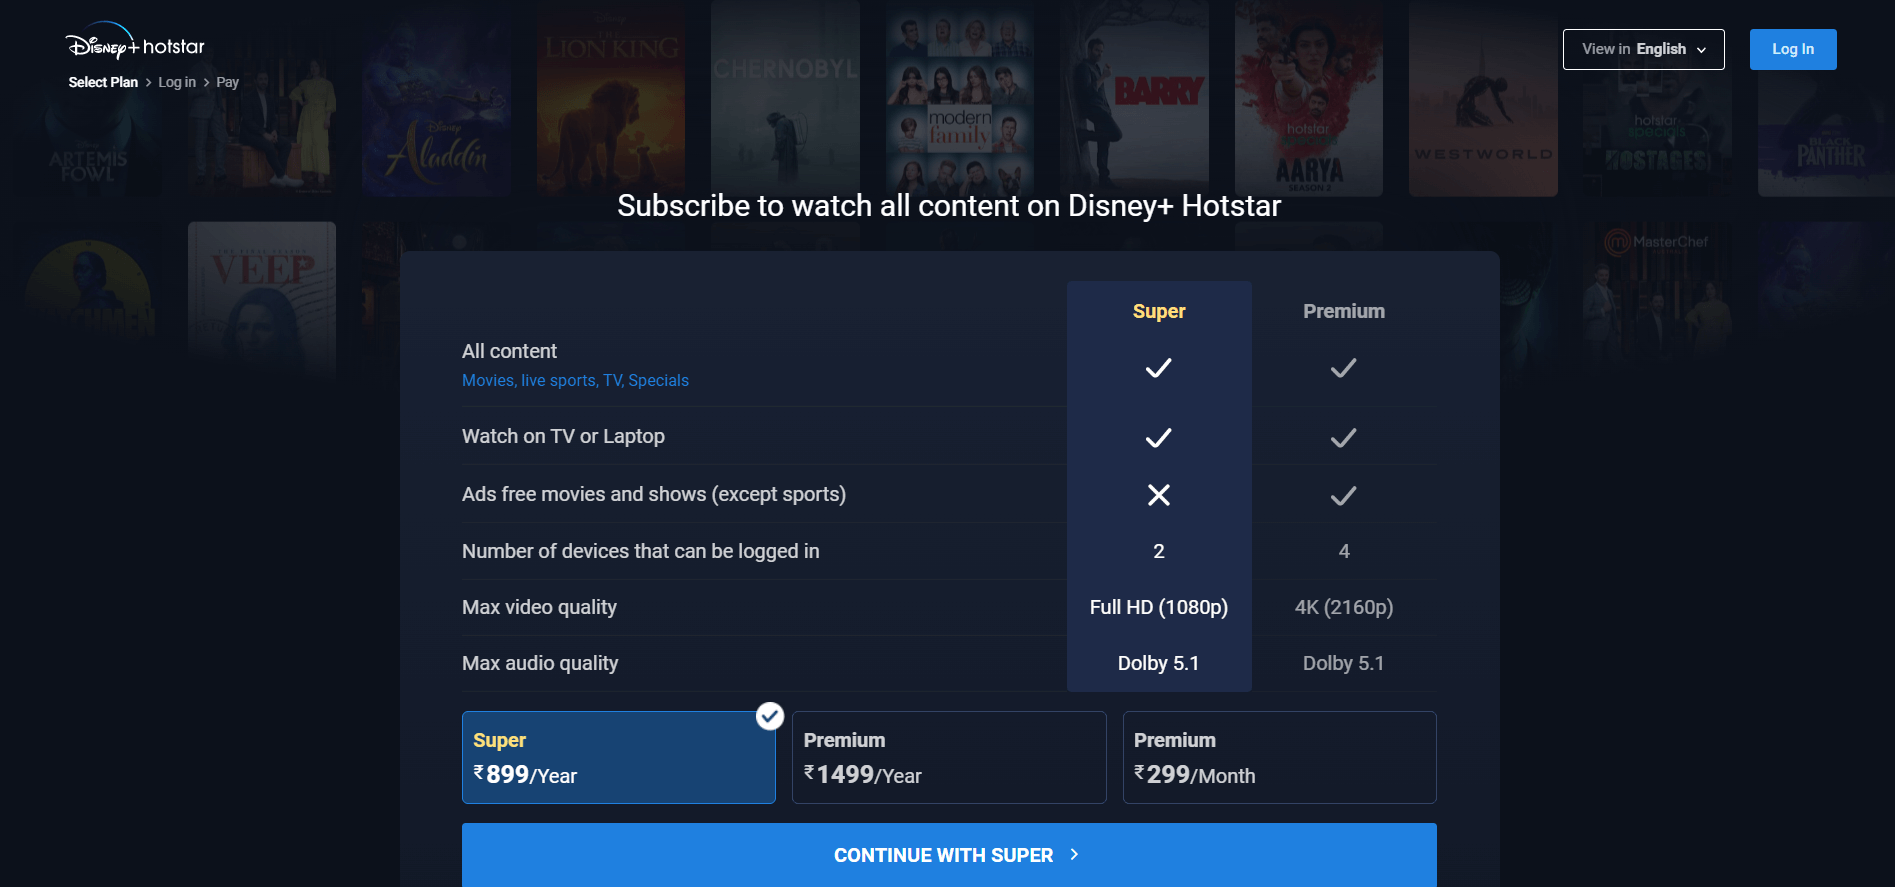  Disney Plus Hotstar ofrece planes de suscripción para aquellos que deseen registrarse. in - Espana 